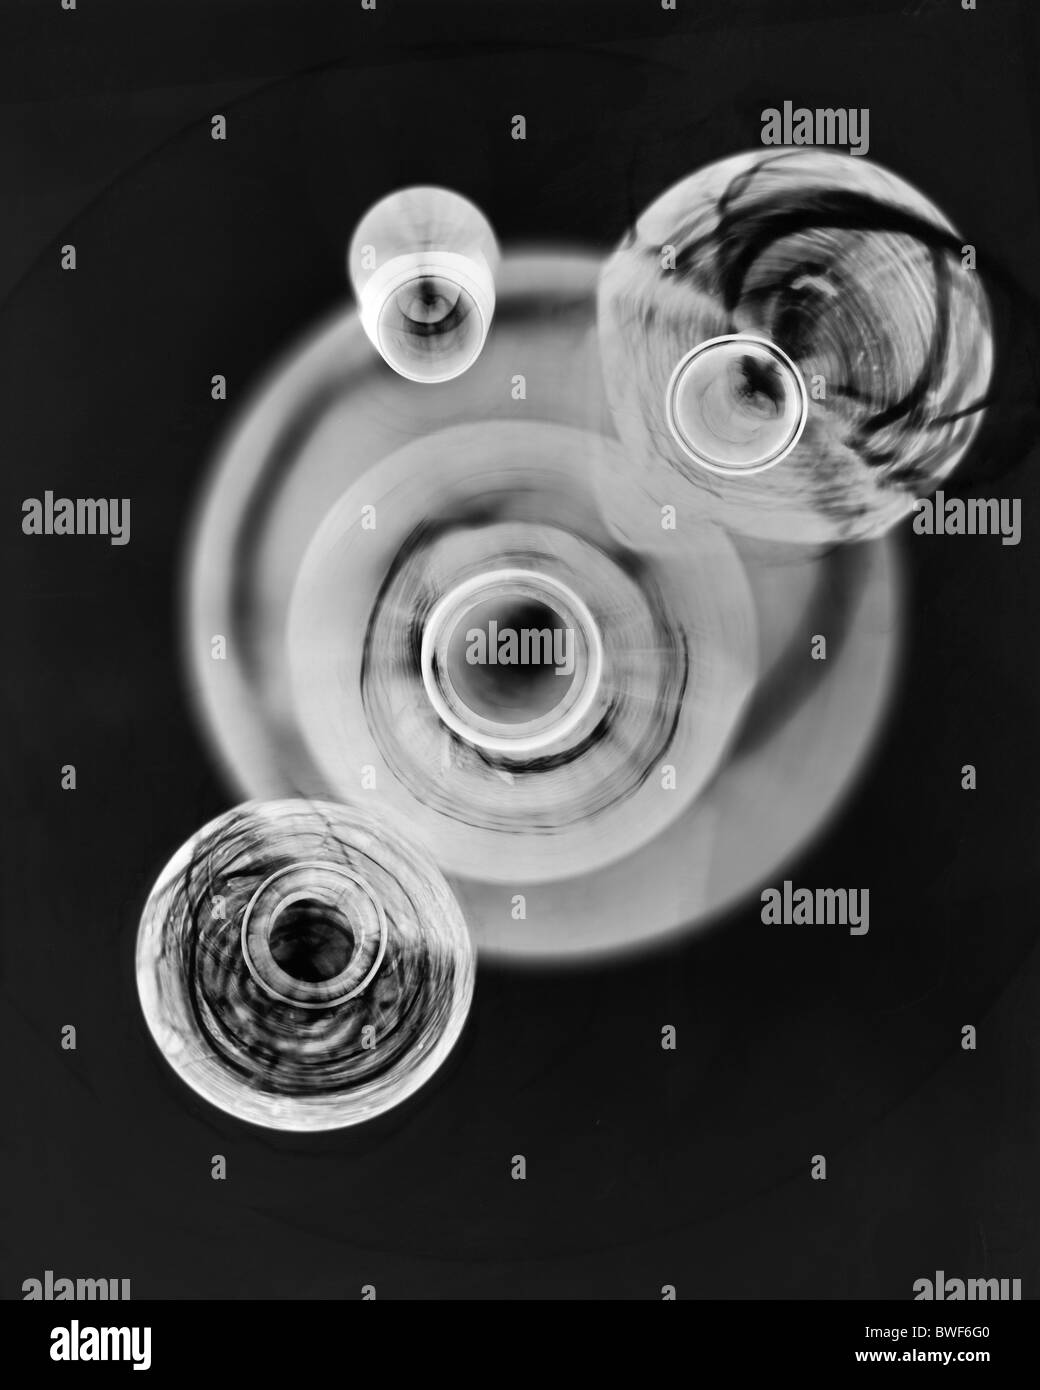 traditionellen Dunkelkammer-Praxis und Fotogramm-Produktion mit chemische Verarbeitung Fotopapier Shadow Catchers Stockfoto